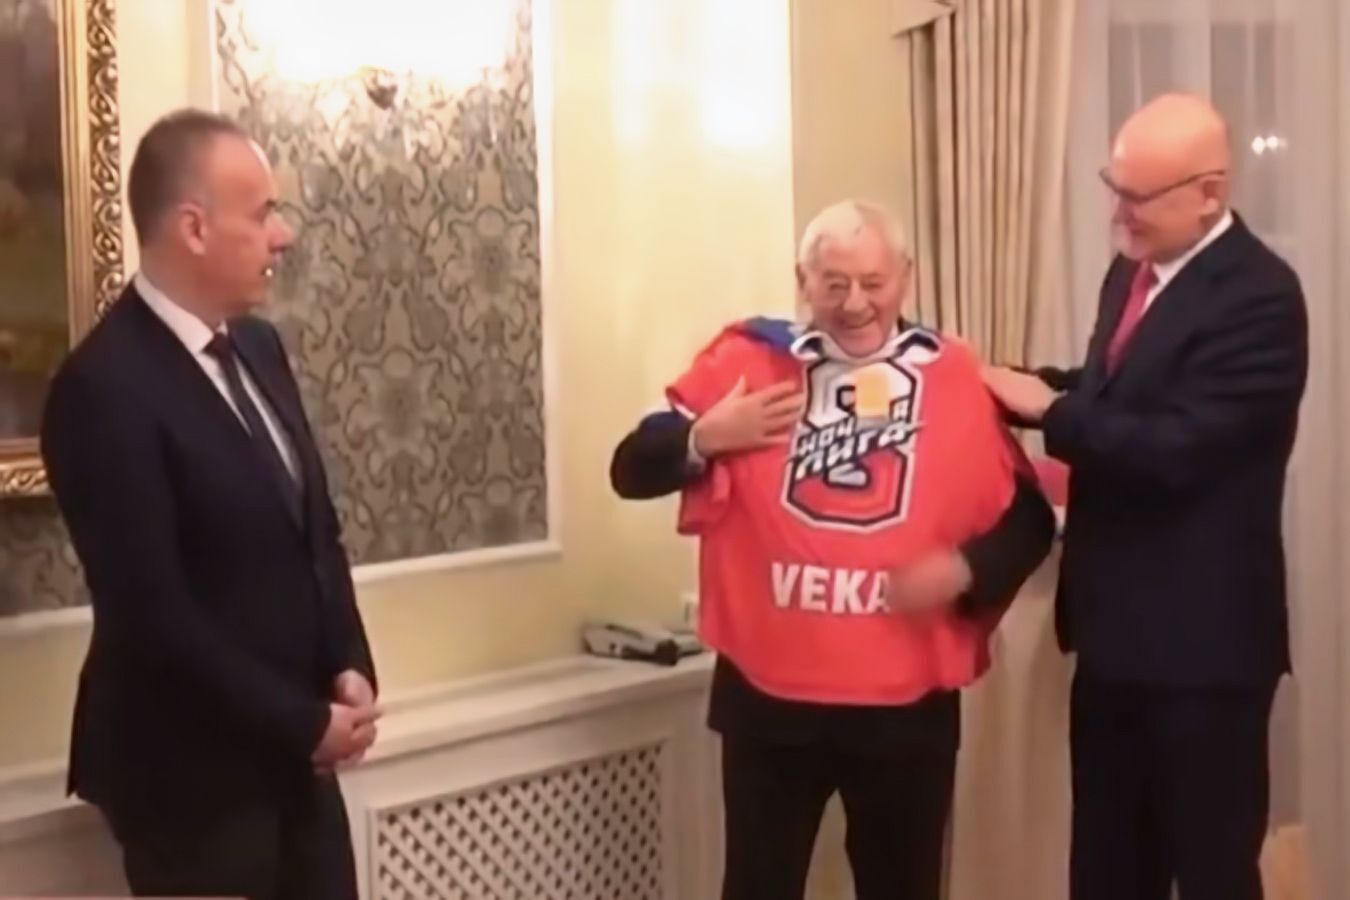 Легенда сборной Чехословакии отказался возвращать Путину его подарок, заявив, что "причин нет"